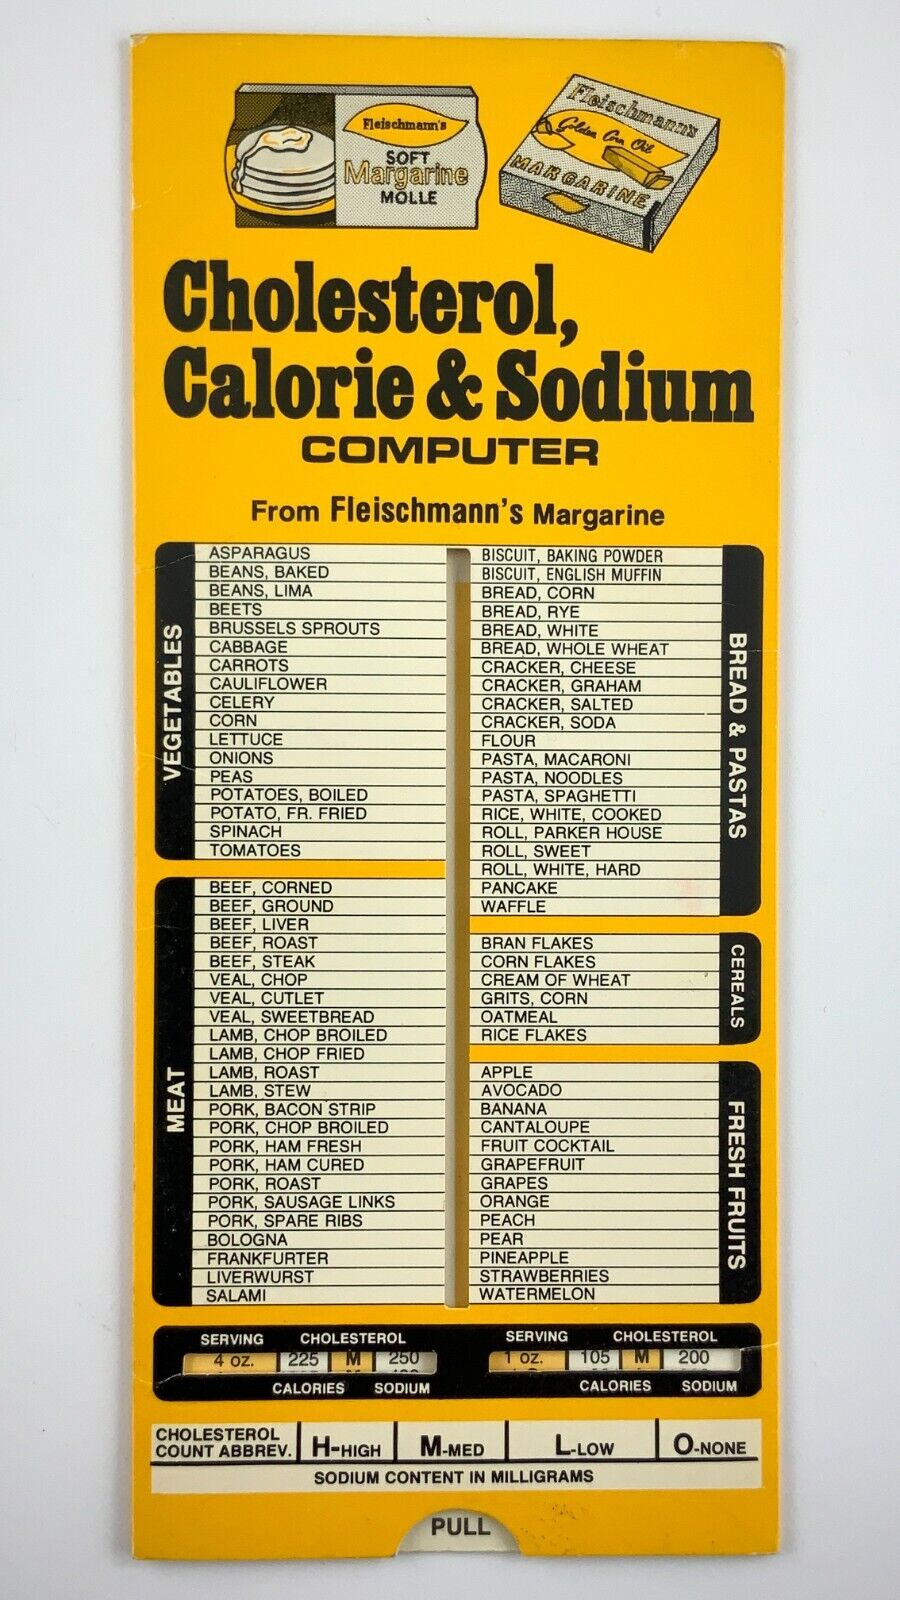 1950 Fleischmanns Margarine Cholesterol Calorie & Sodium Computer Ad 723A